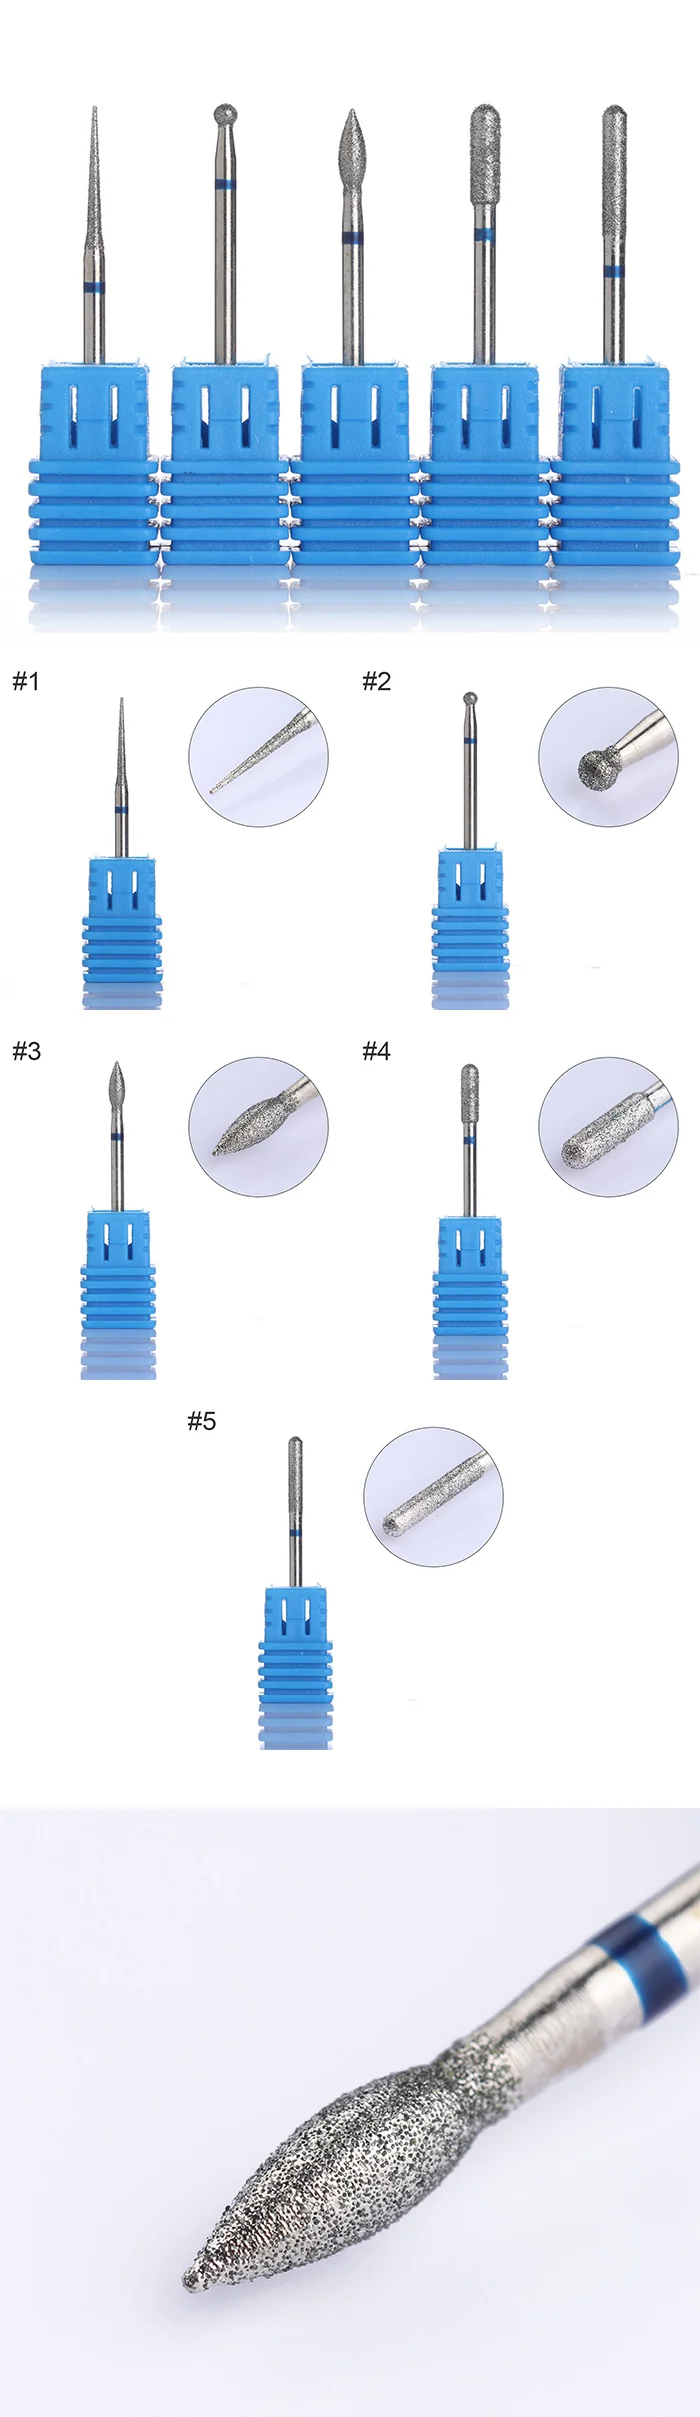 Сверло для ногтей ЗАМЕНА файл протяжки синий электрический машина аксессуар Маникюр дизайн UV светодиодный гель инструмент